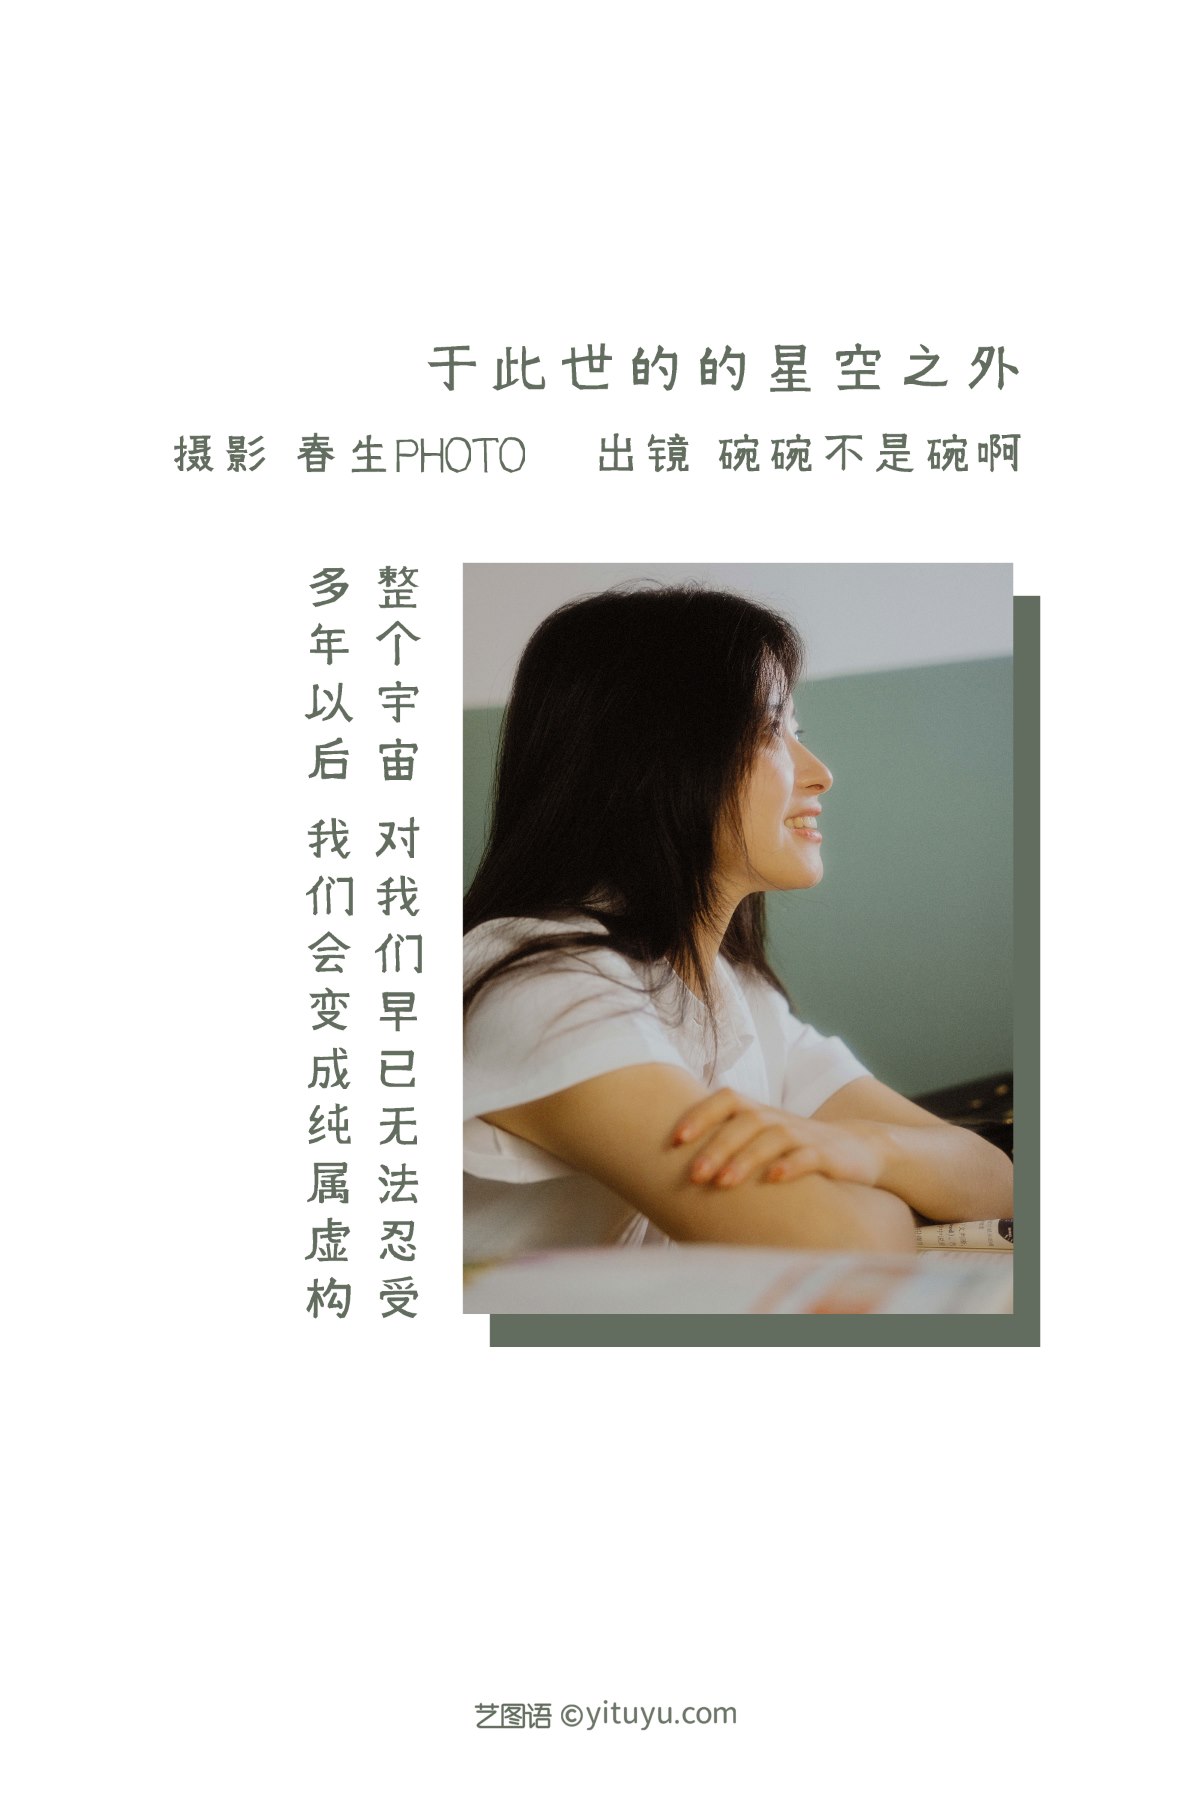 YiTuYu艺图语 Vol 2250 Wan Wan Bu Shi Wan A 0001 1316725774.jpg